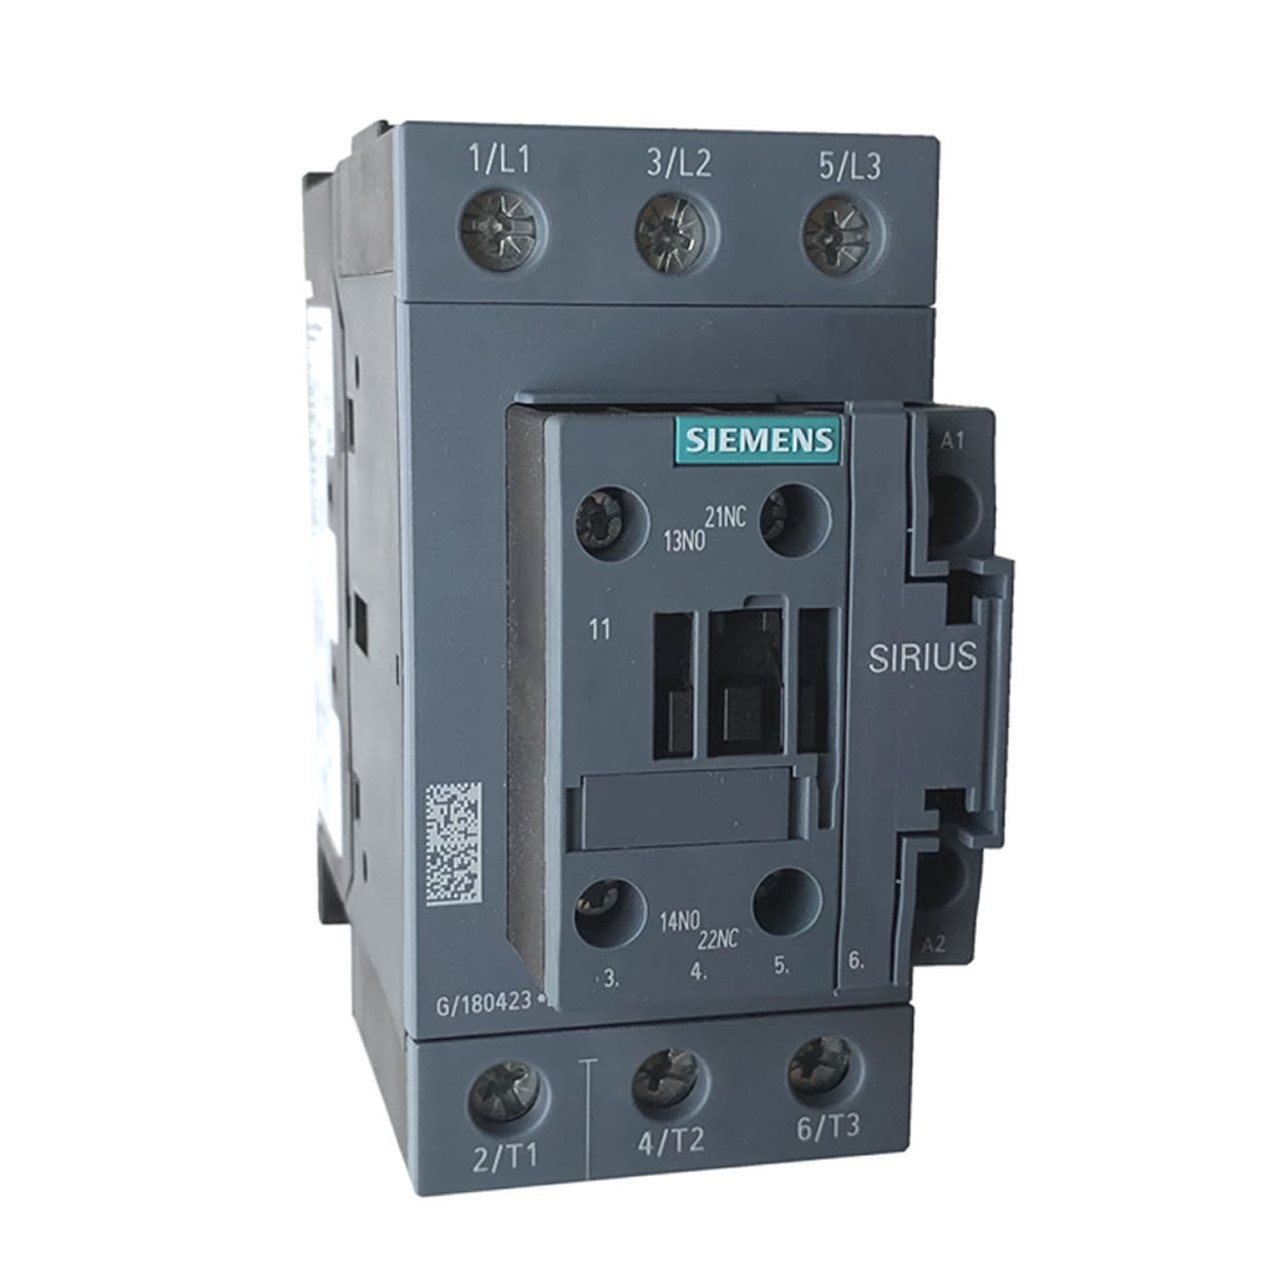 Siemens 3RT2037-1AH20 contactor